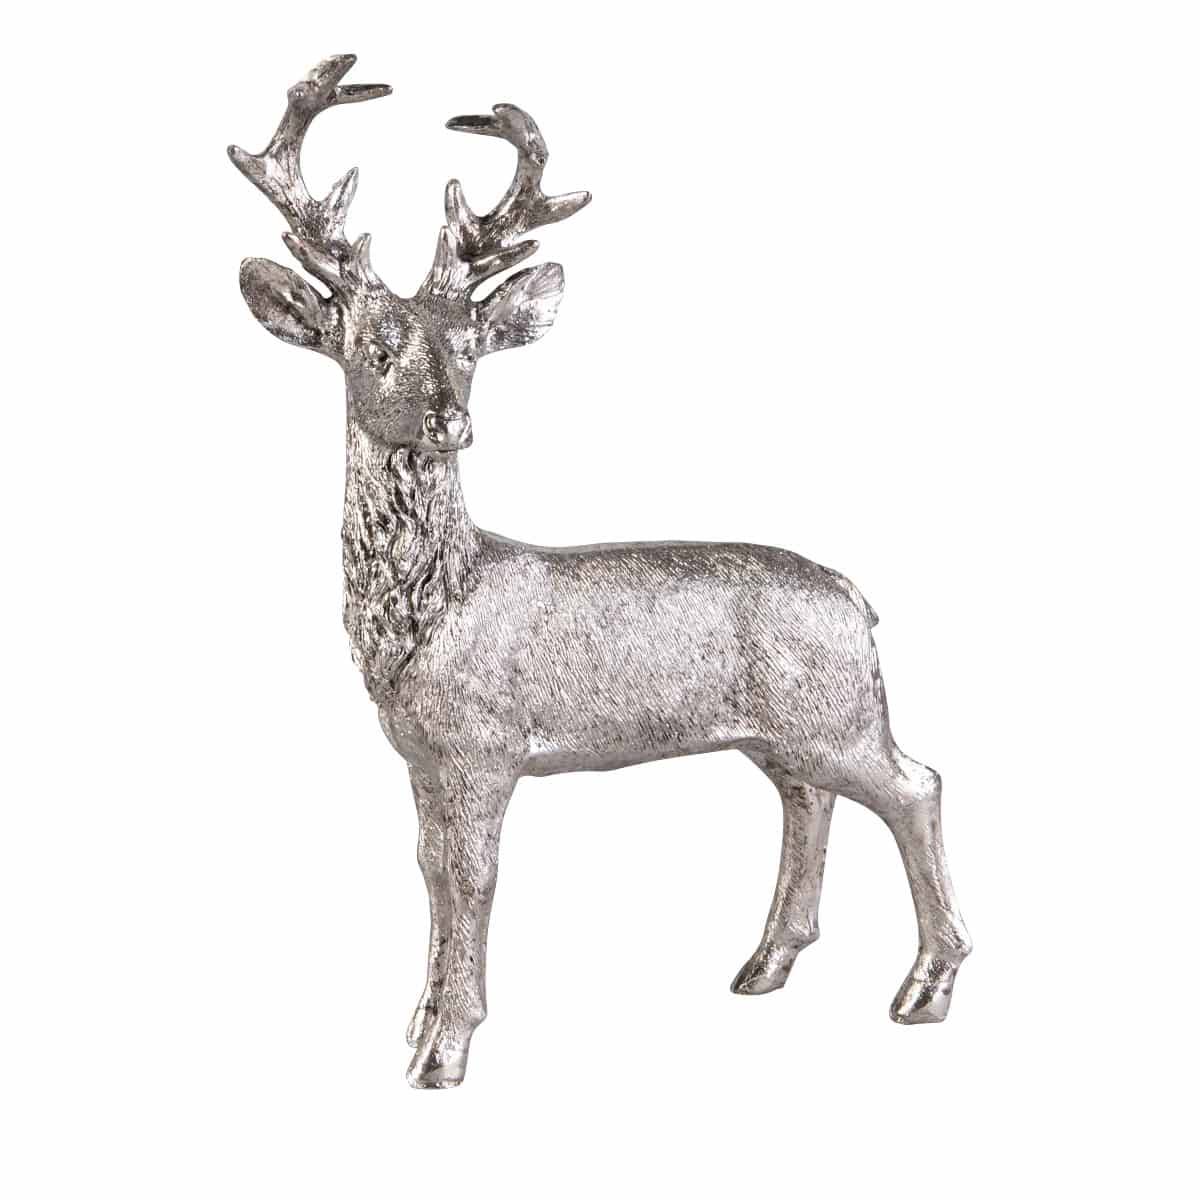 Hirsch stehend - silber - aus Polyresin - ca. 25 x 5 x 18 cm